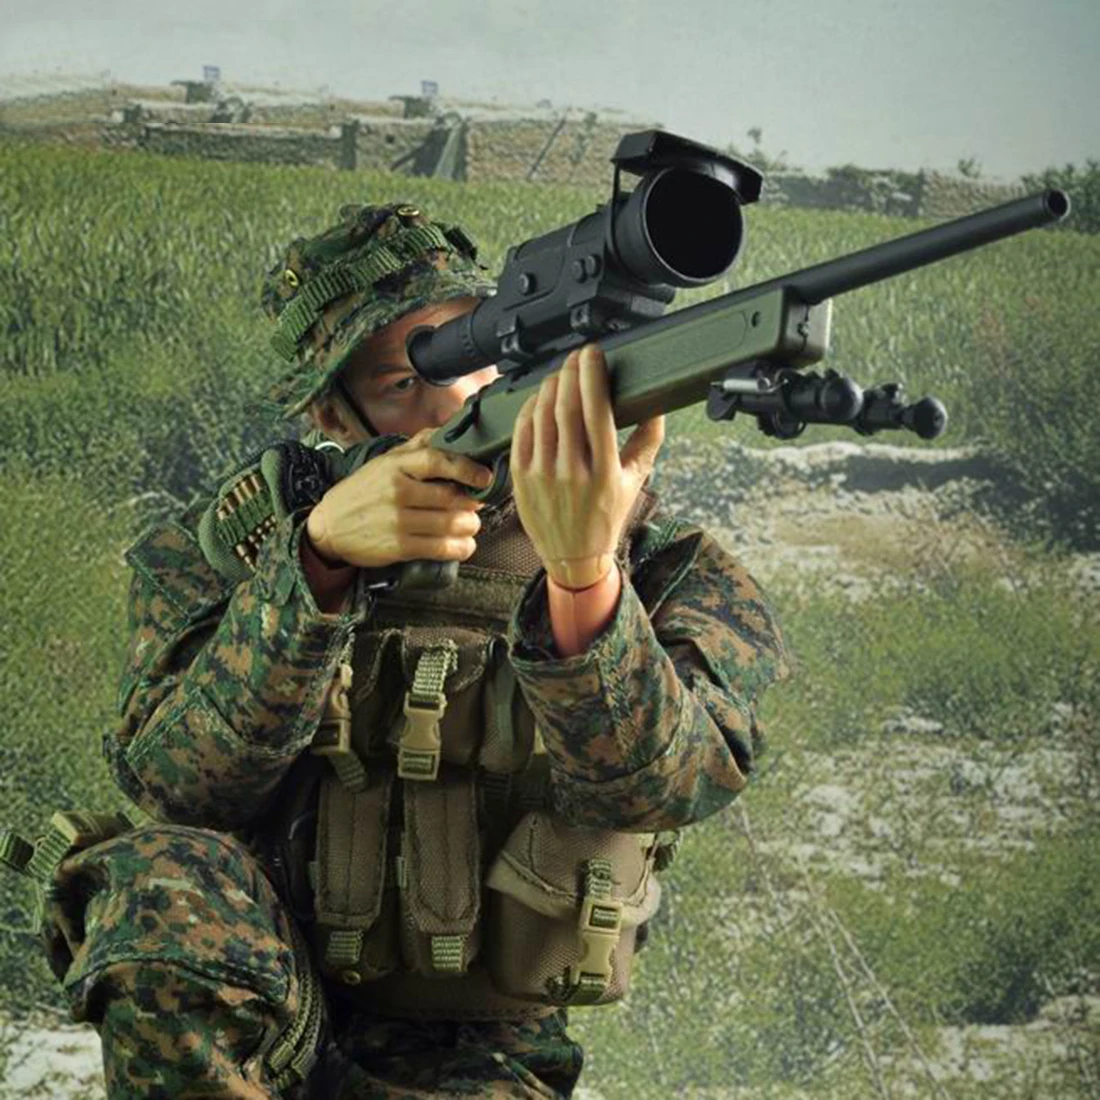 VeryHot модель солдата Костюм Морской Снайпер Униформа оборудование для 1/6 12 дюймов модель солдата(тело и голова не включены